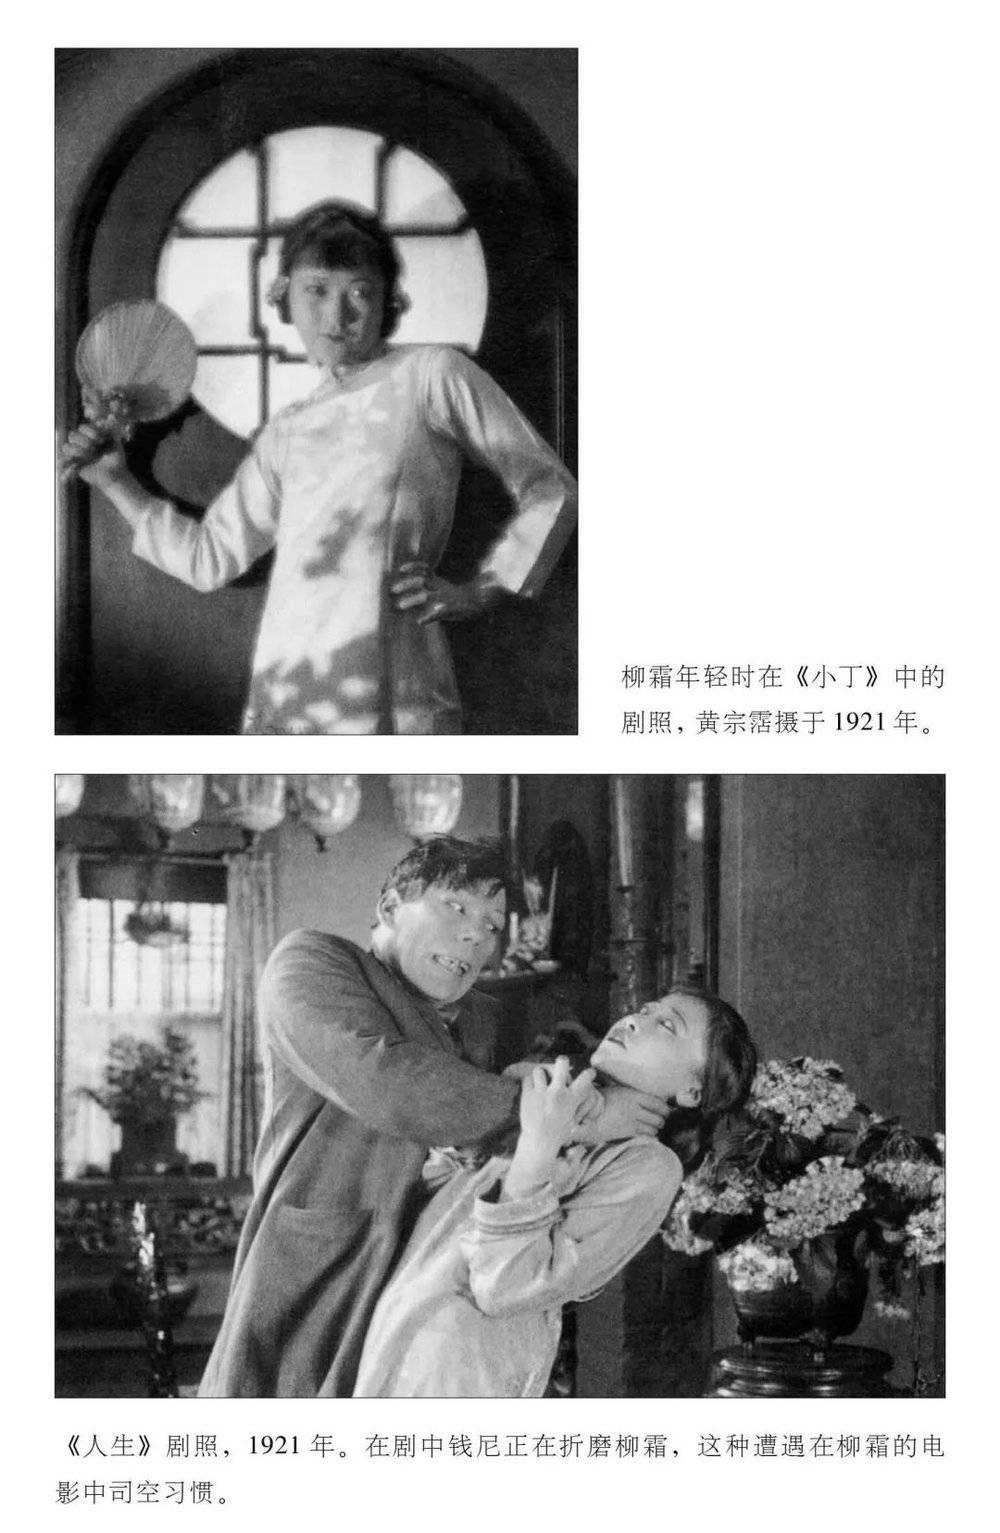 图片来源:《黄柳霜:从洗衣工女儿到好莱坞传奇》，后浪·北京联合出版公司，2016年版<br>